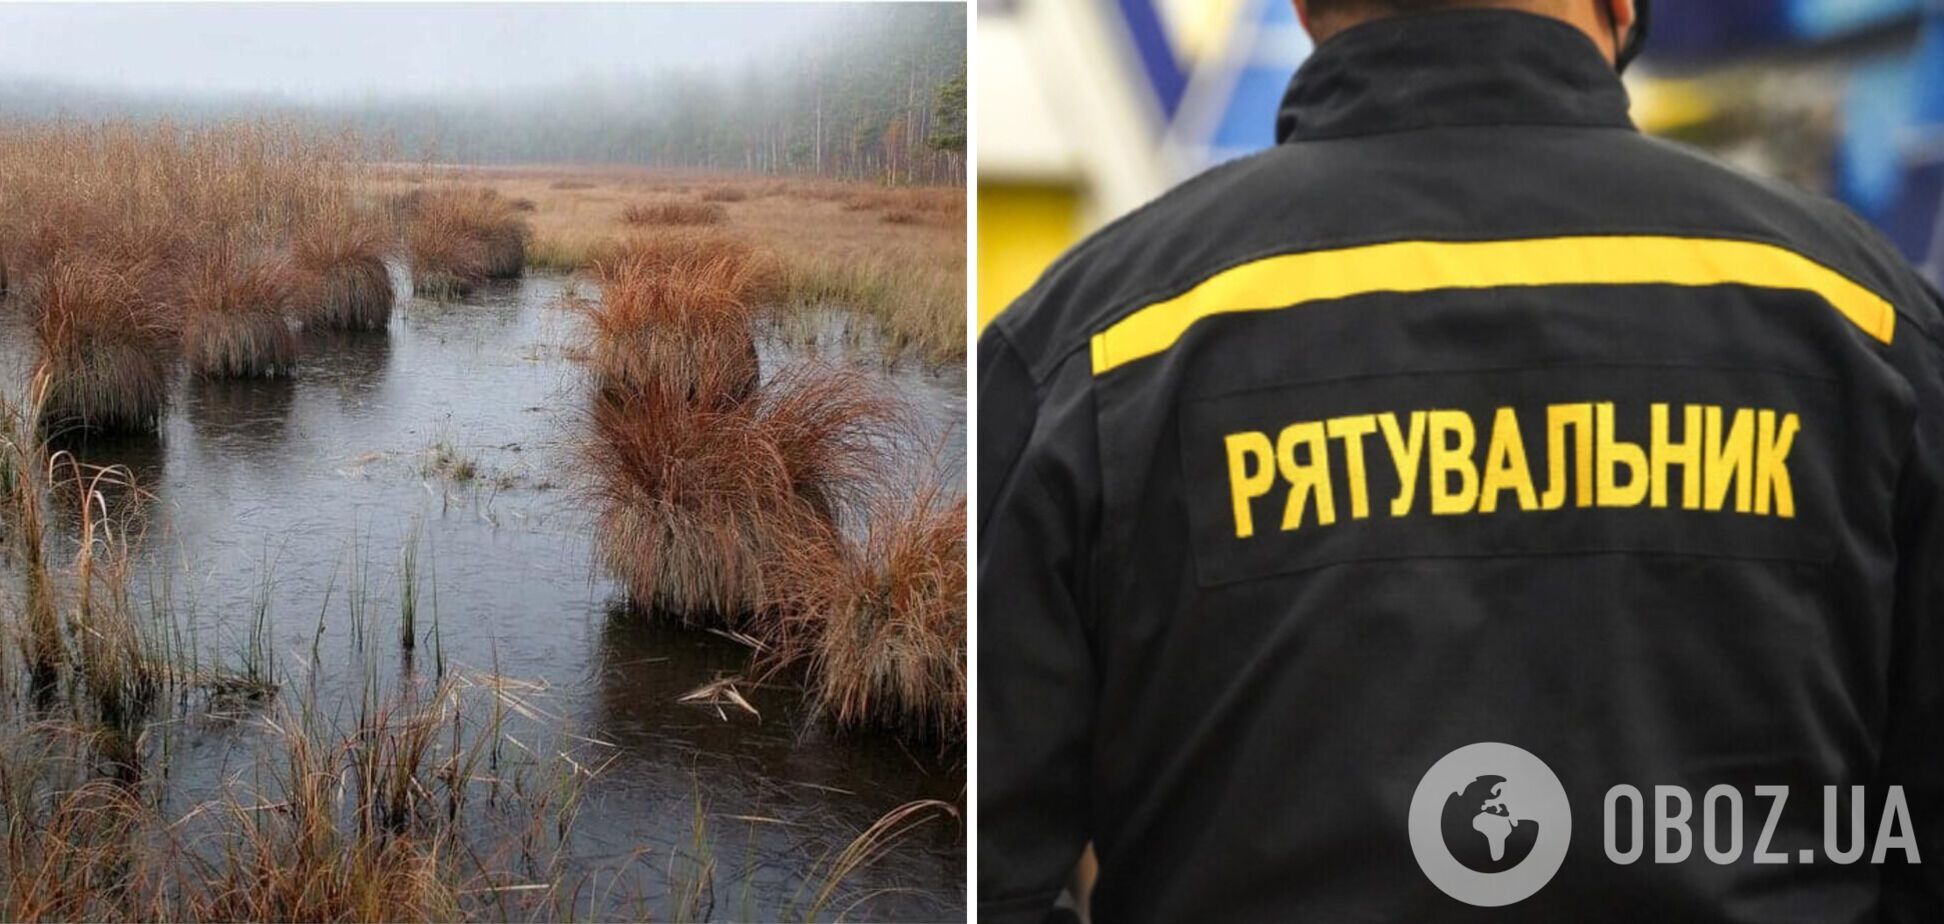 Во Львовской области спасатели достали девочку из болота: хотела сократить путь между озерами